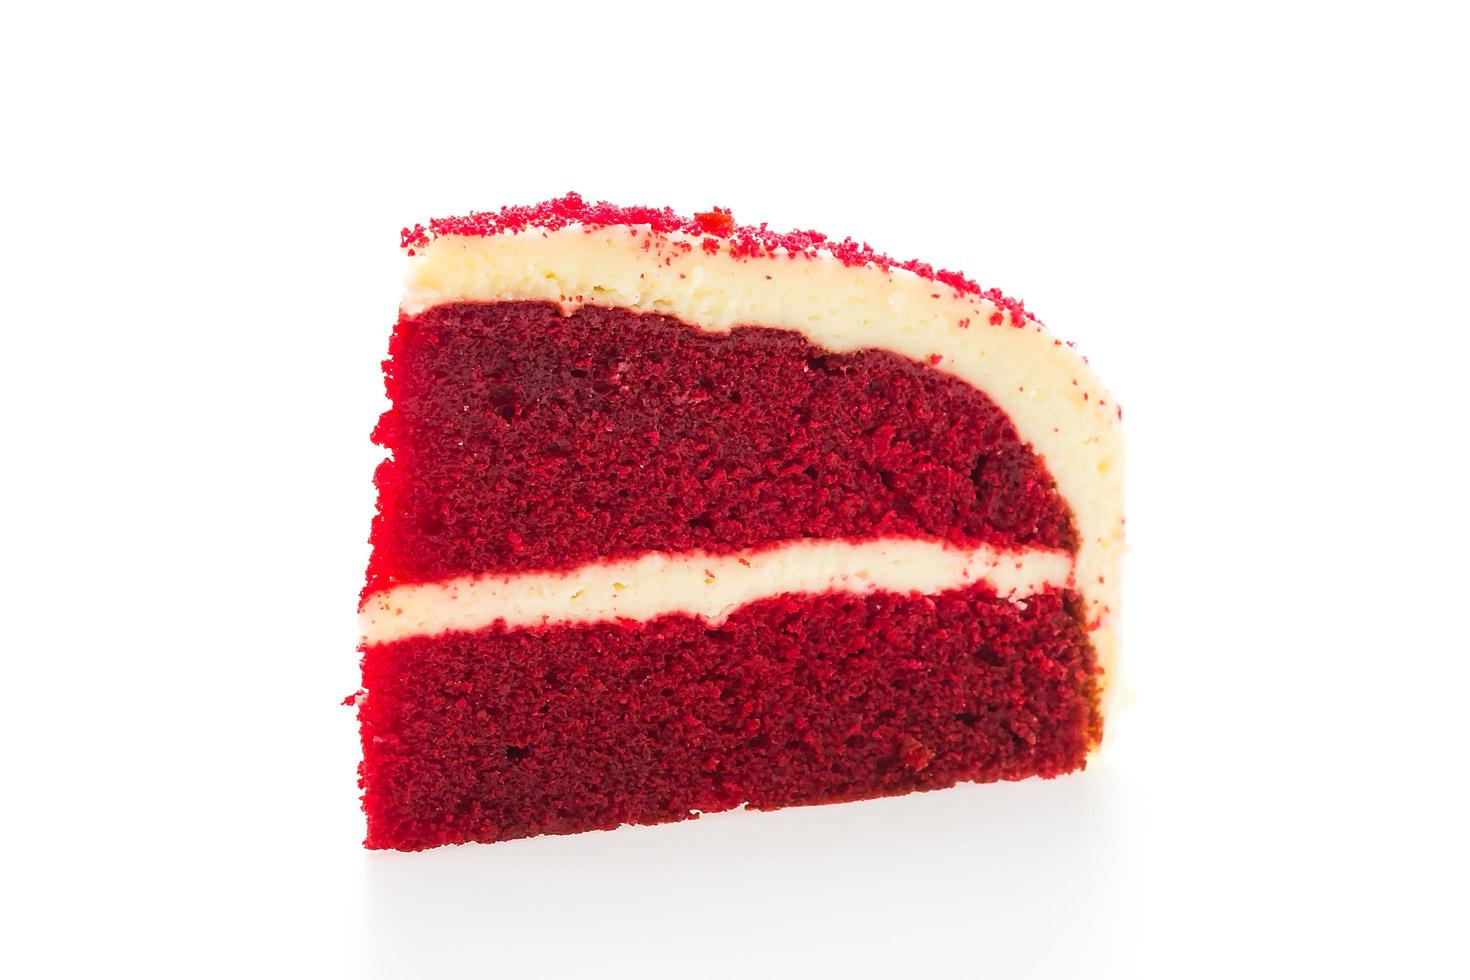 Gâteau de velours rouge isolé sur fond blanc photo